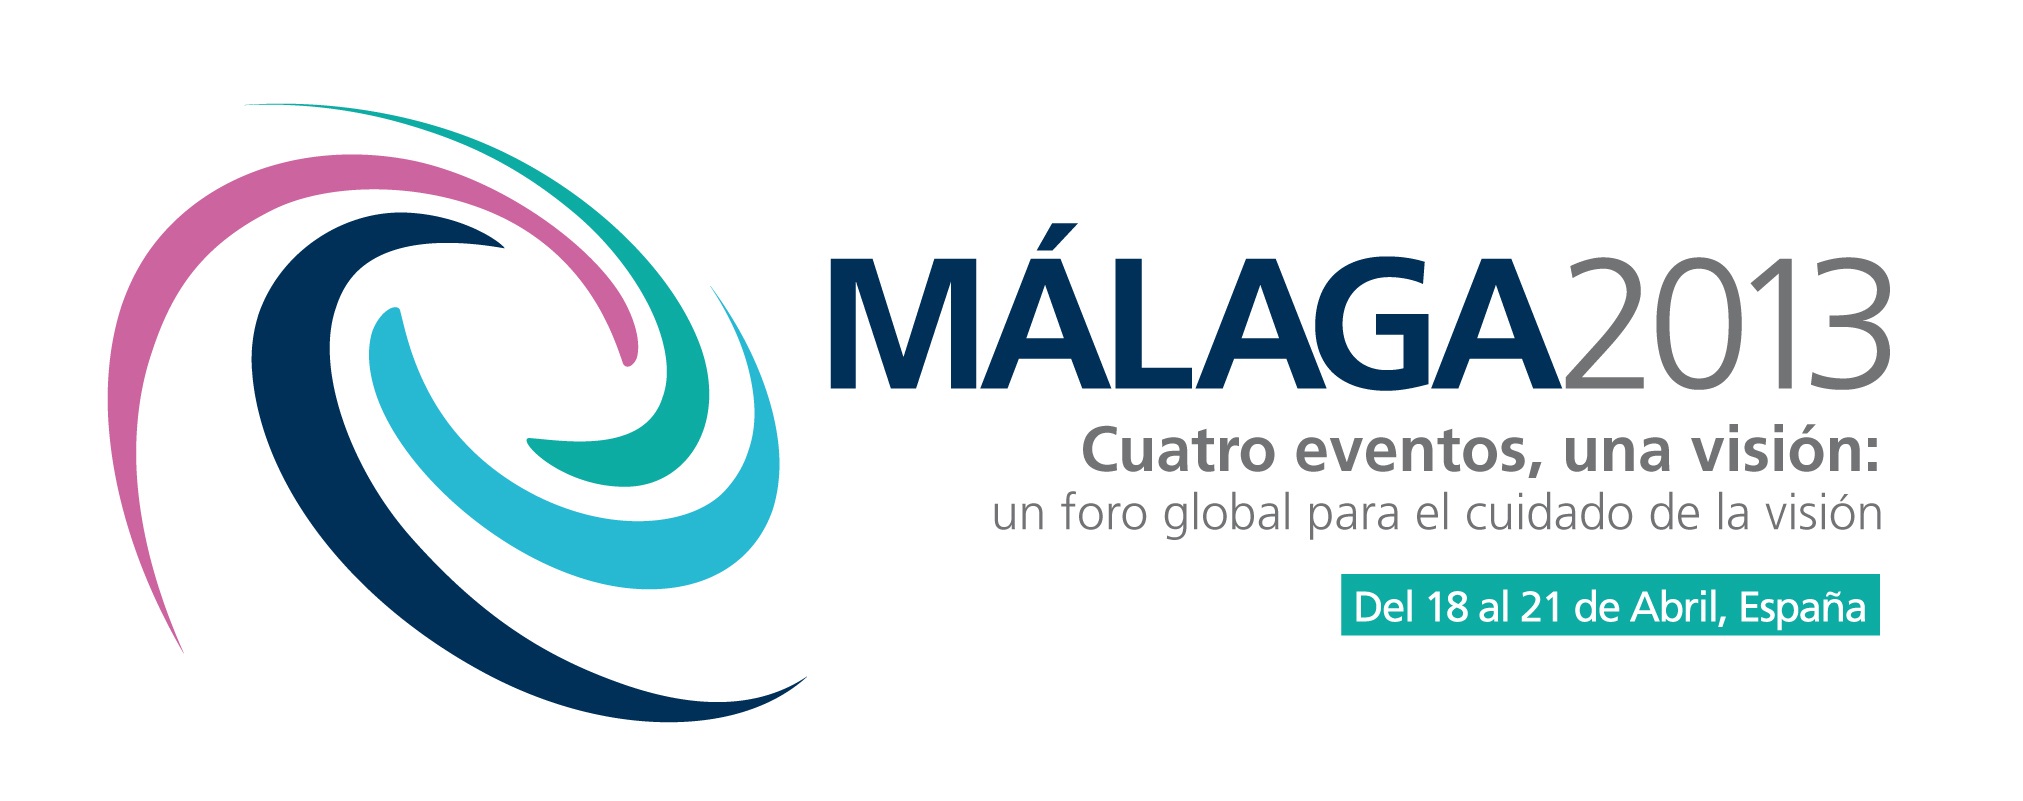 Logotipo Málaga 2013 español